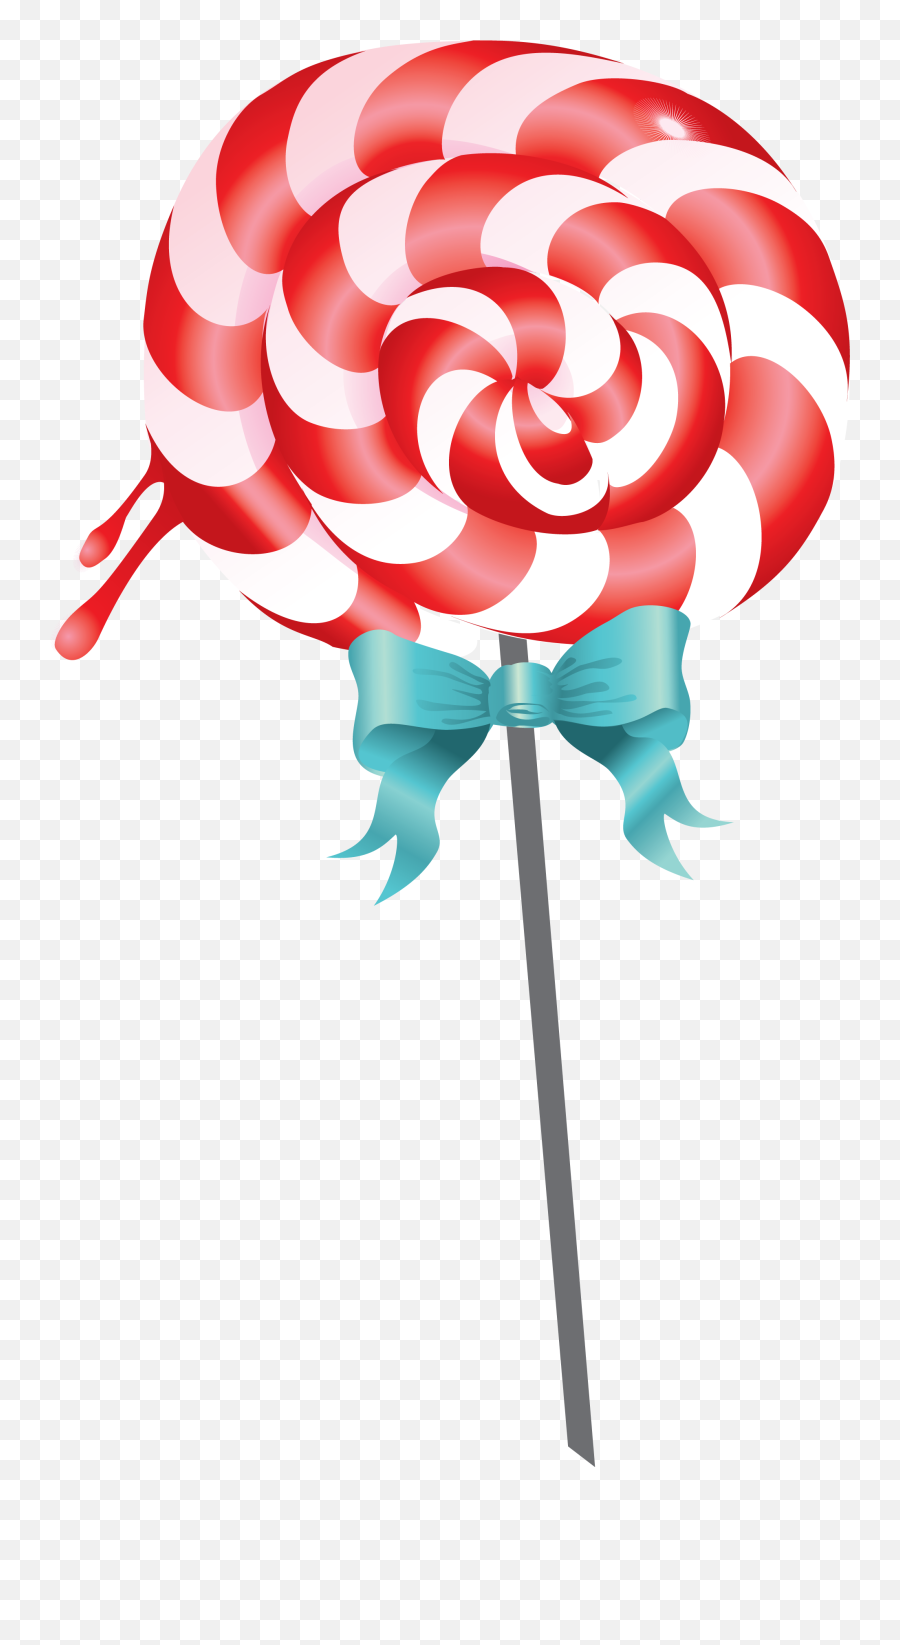 Lollipop Transparent Png Image - Lollipop Background,Lollipop Transparent